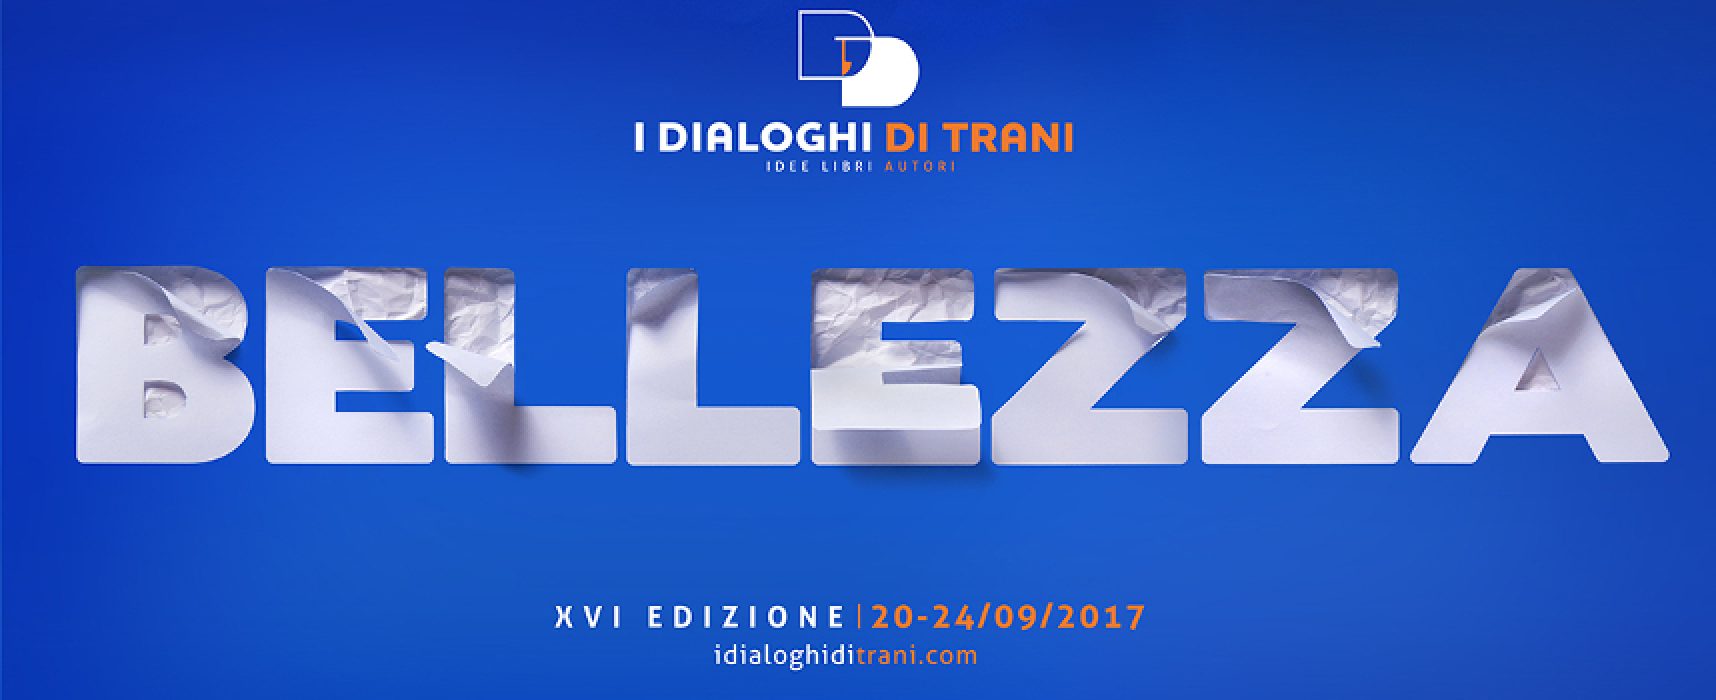 “I Dialoghi di Trani” a Bisceglie, appuntamento sulla dieta mediterranea a Palazzo Tupputi